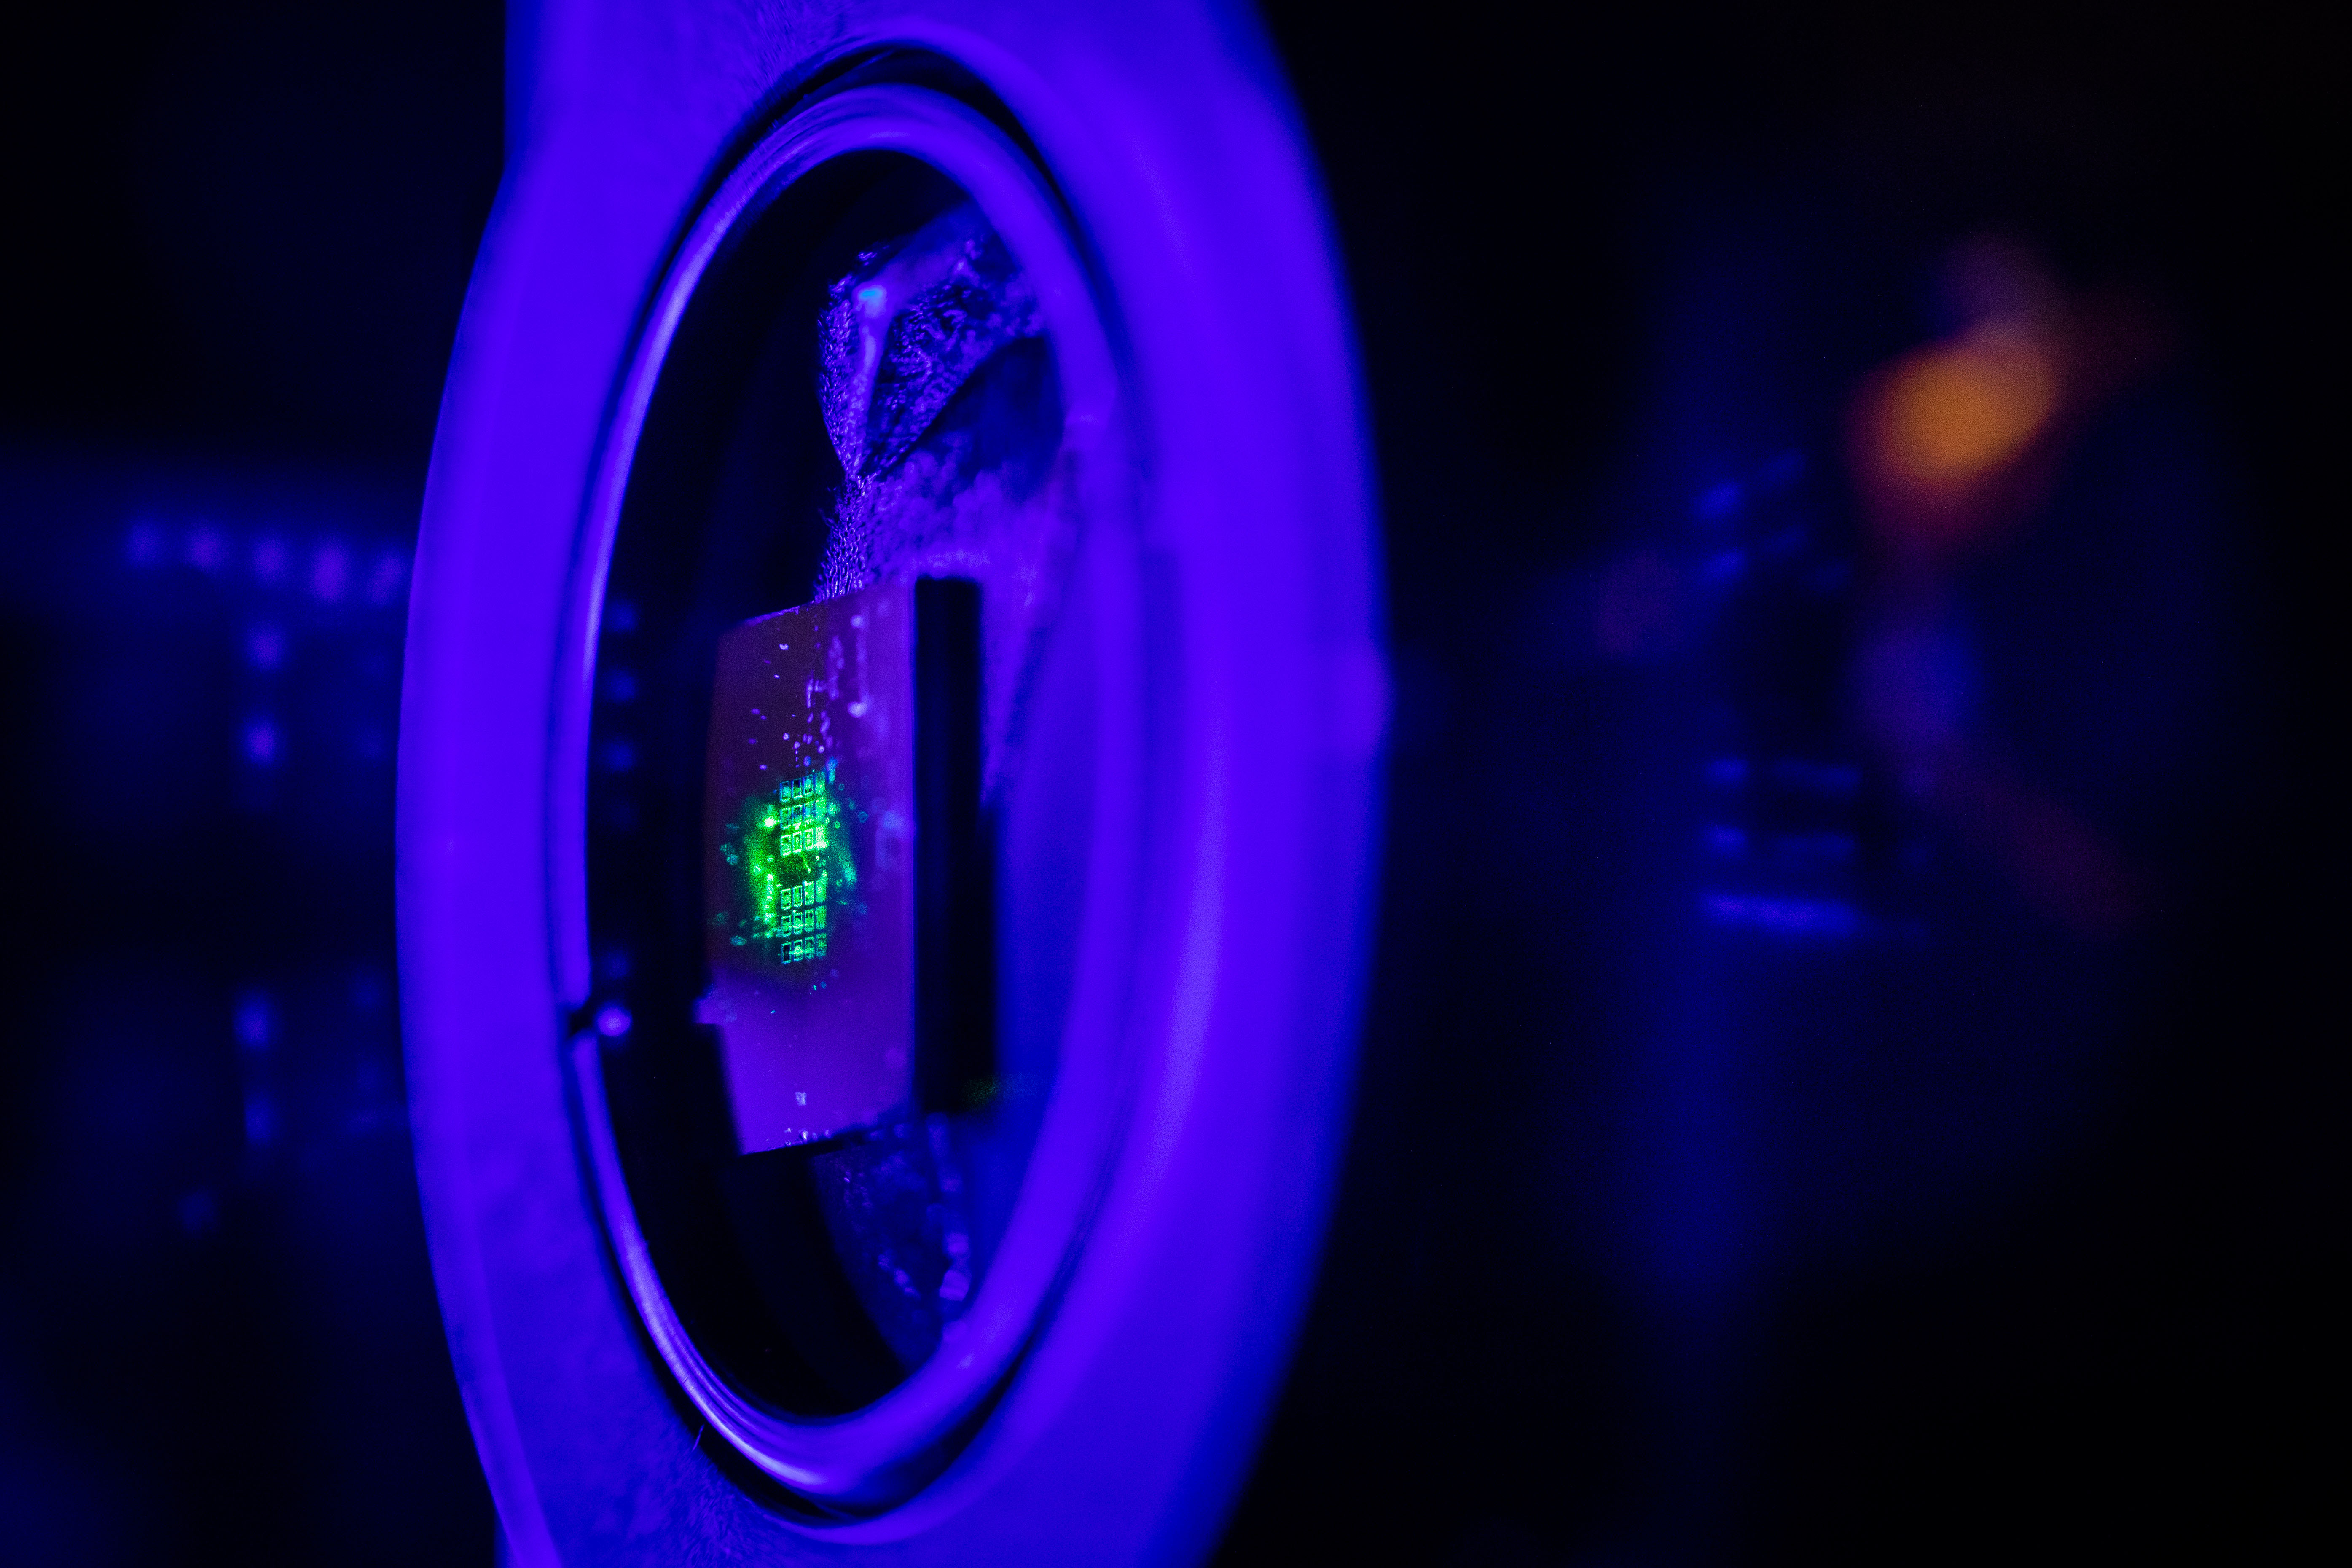 Green laser light illuminates a metasurface